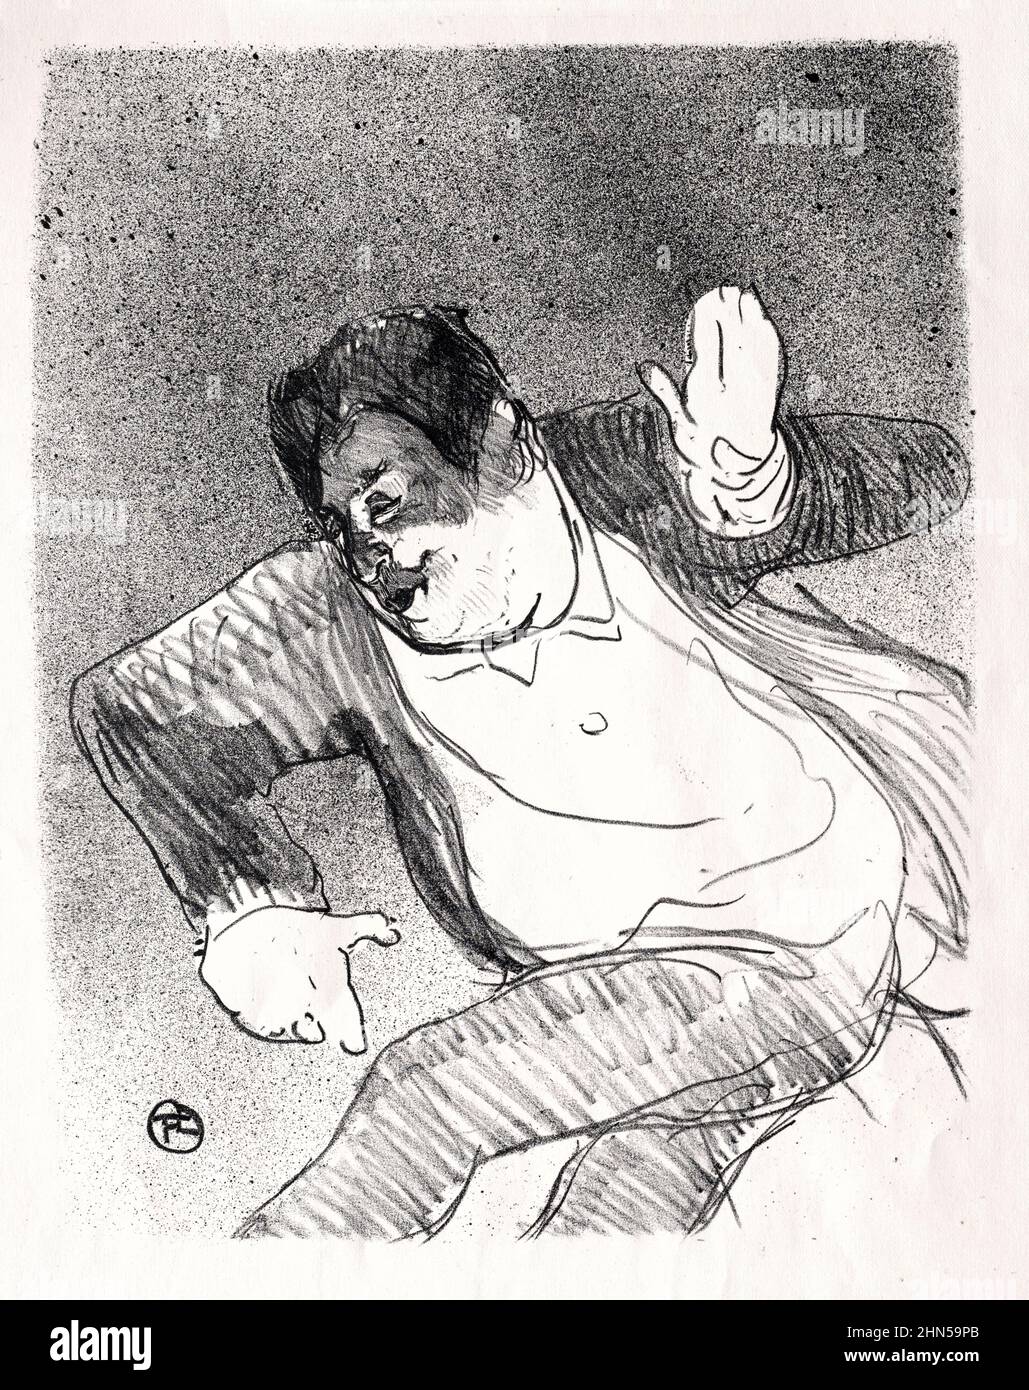 Caudieux (1893). Antike Vintage-Zeichnung von Henri Toulouse-Lautrec. Stockfoto